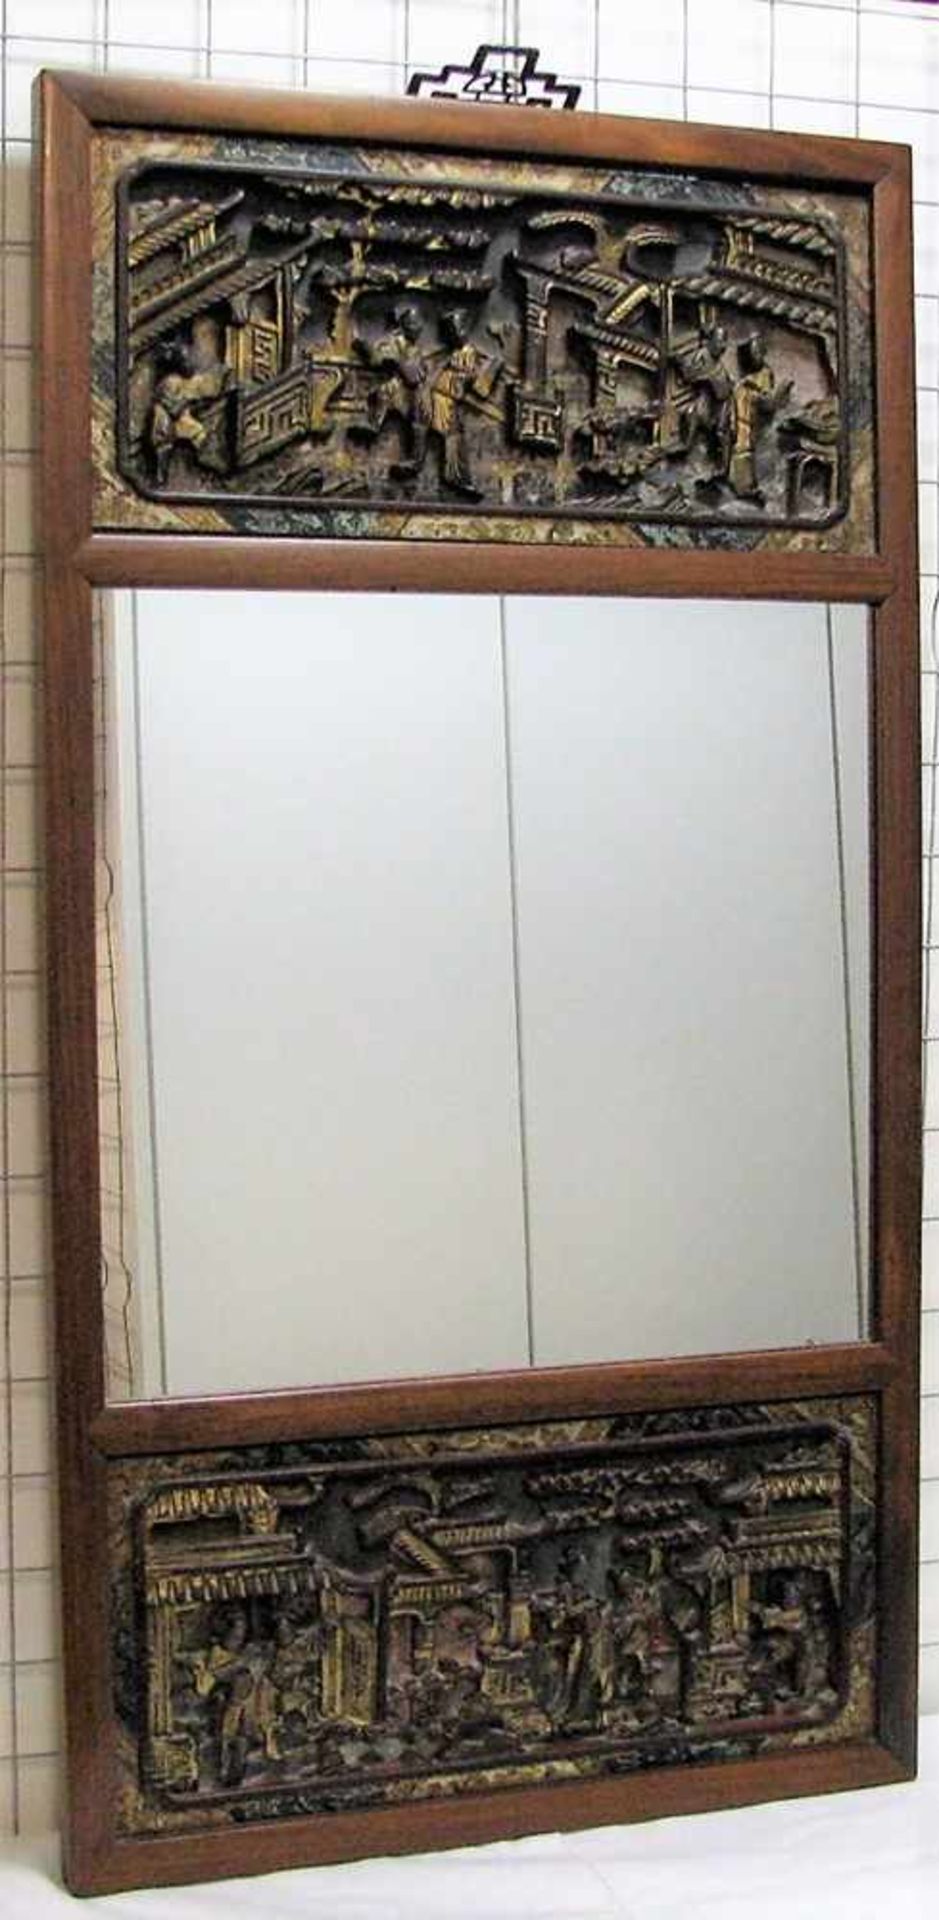 Spiegel, China, schweres Edelholz mit feinen Reliefschnitzereien, farbig gefasst und vergoldet, 93 x